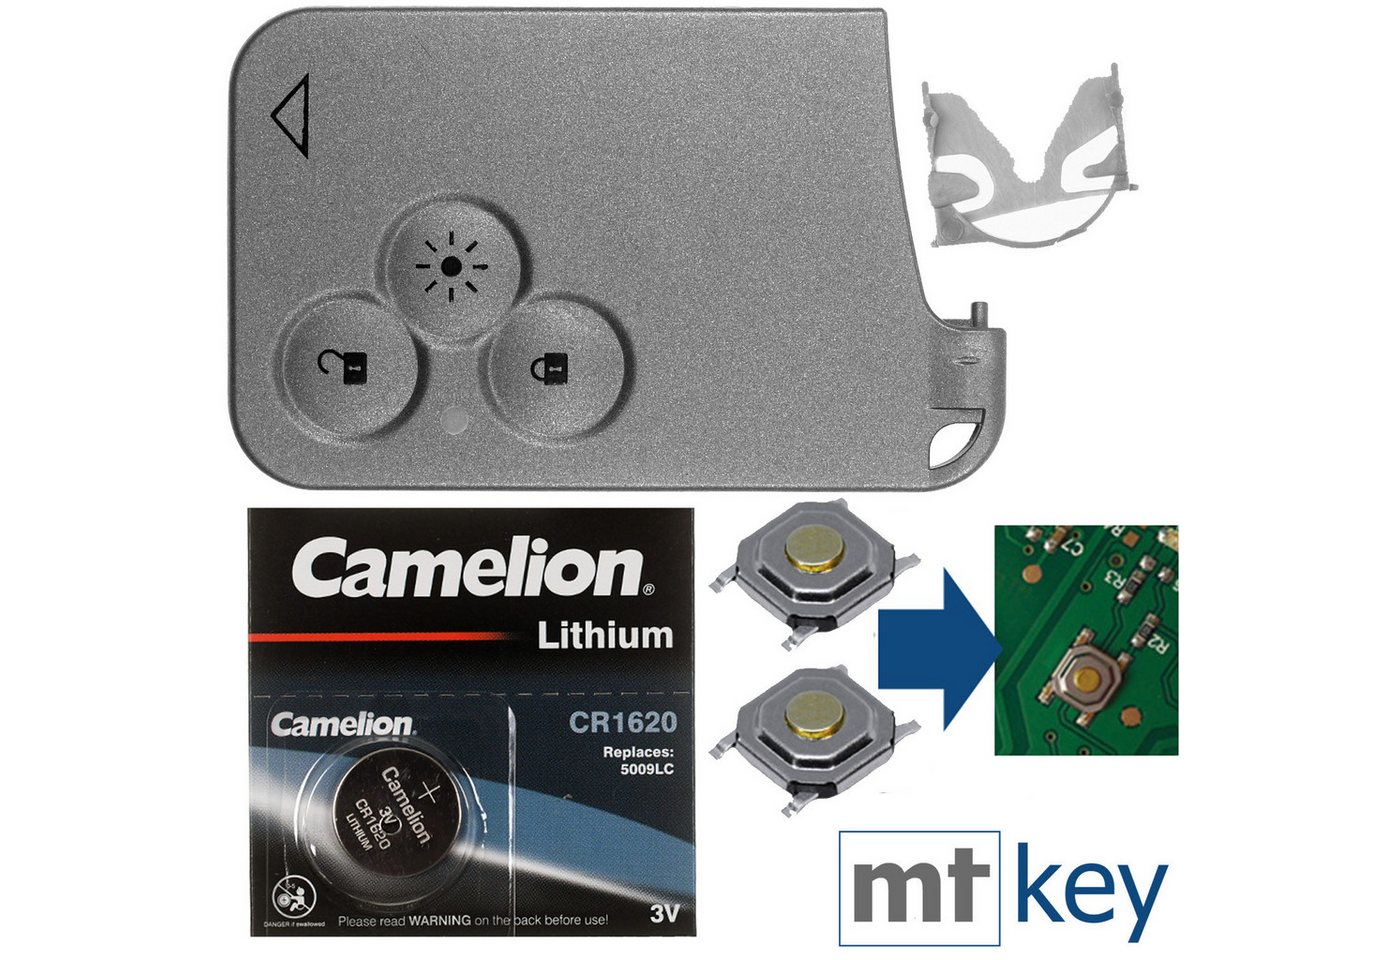 mt-key Auto Schlüssel Keycard 3 Tasten + 2X Mikrotaster + 1x passende CR1620 Knopfzelle, CR1620 (3 V), für Renault Laguna II Espace IV Vel Satis Funk Fernbedienung von mt-key